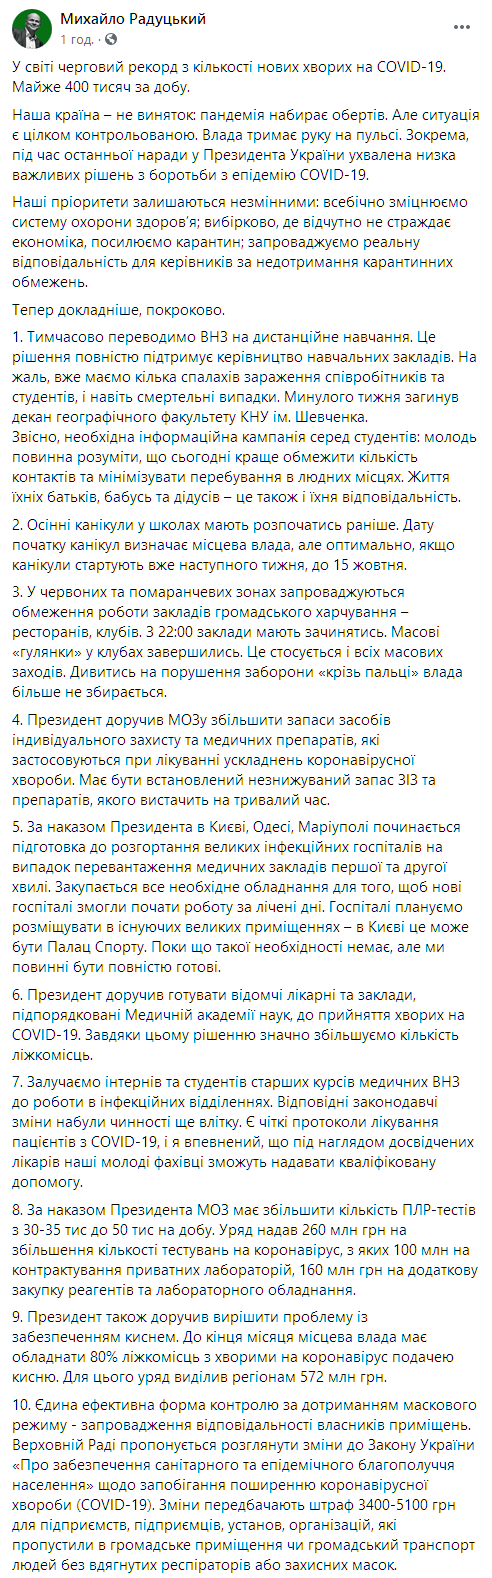 Радуцкий анонсировал ужесточение карантина в Украине. Скриншот: facebook.com/radutskyy